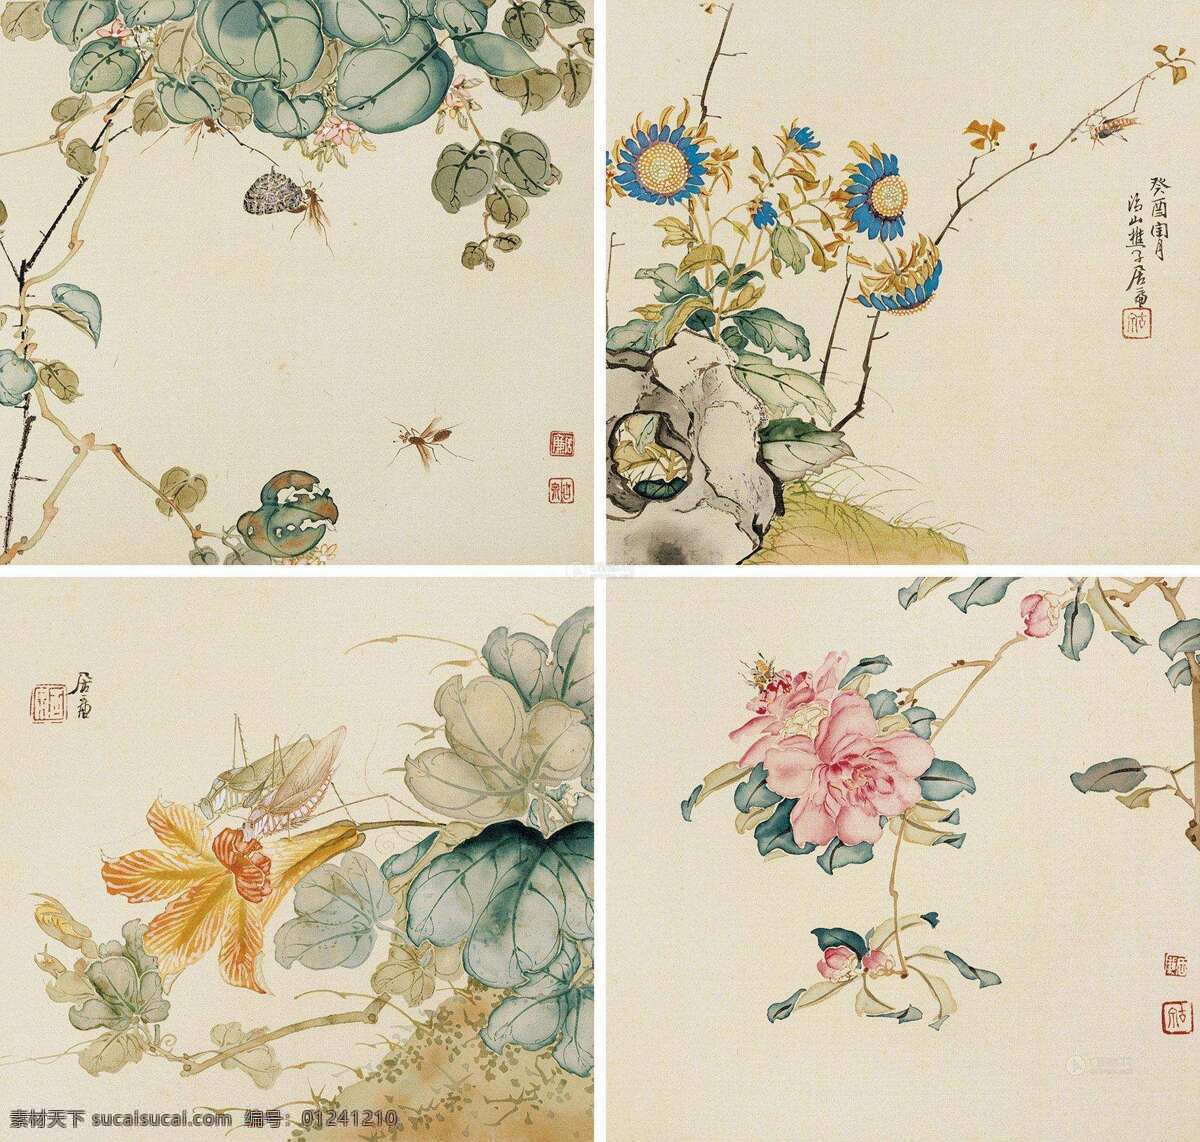 花鸟画 花卉 工笔画 中国画 古画 文化艺术 绘画书法